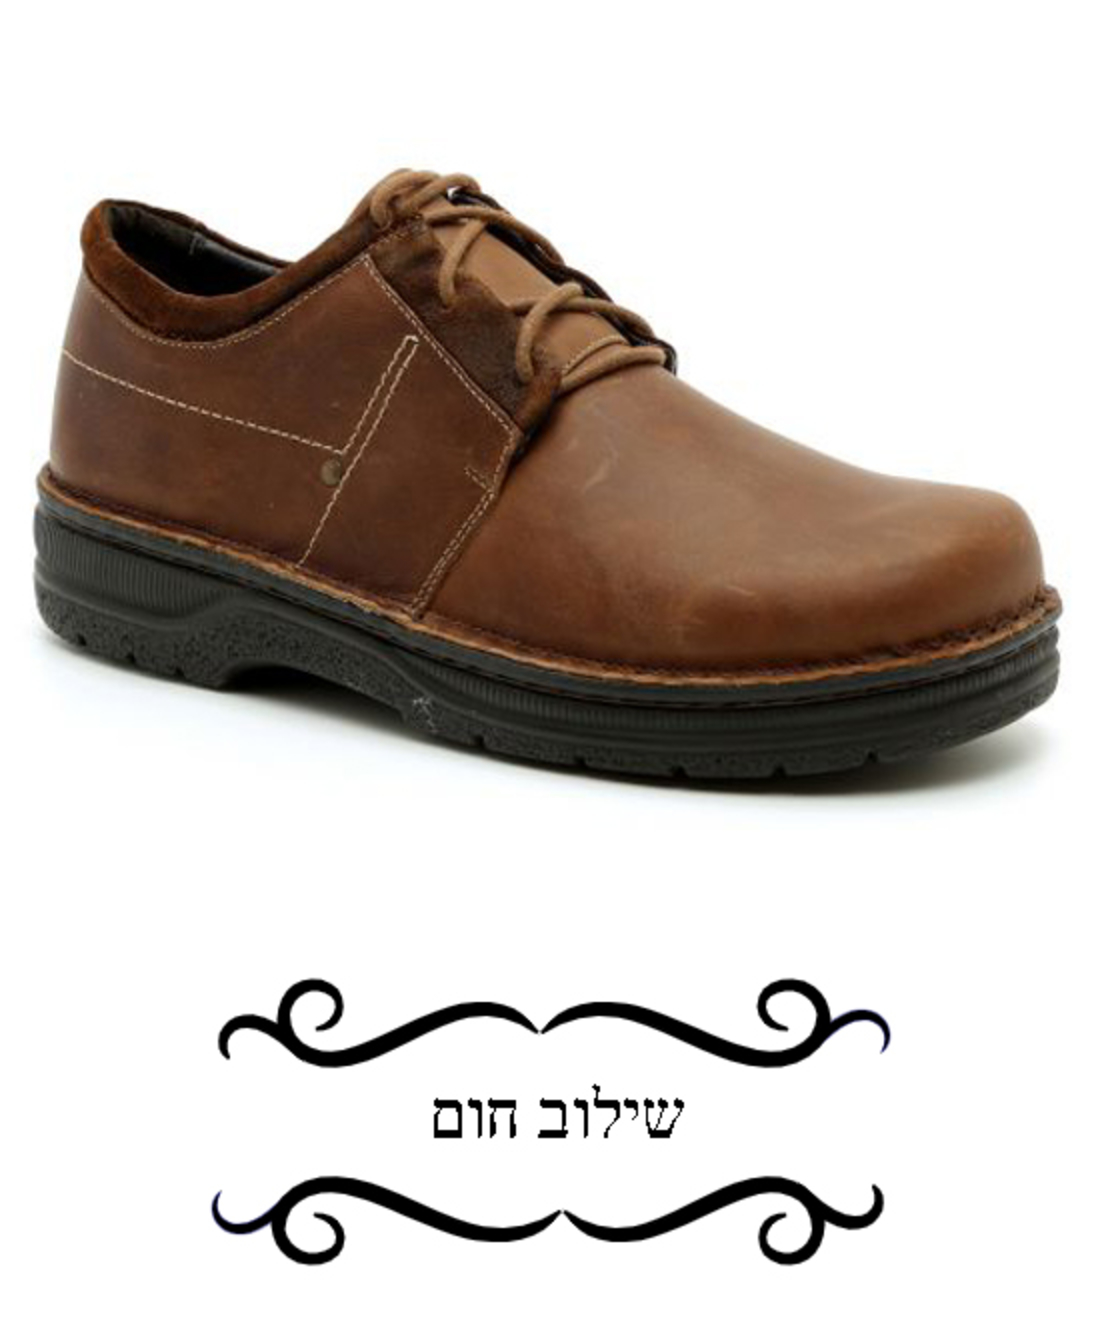 Lok - Teva Naot Shoes - Men